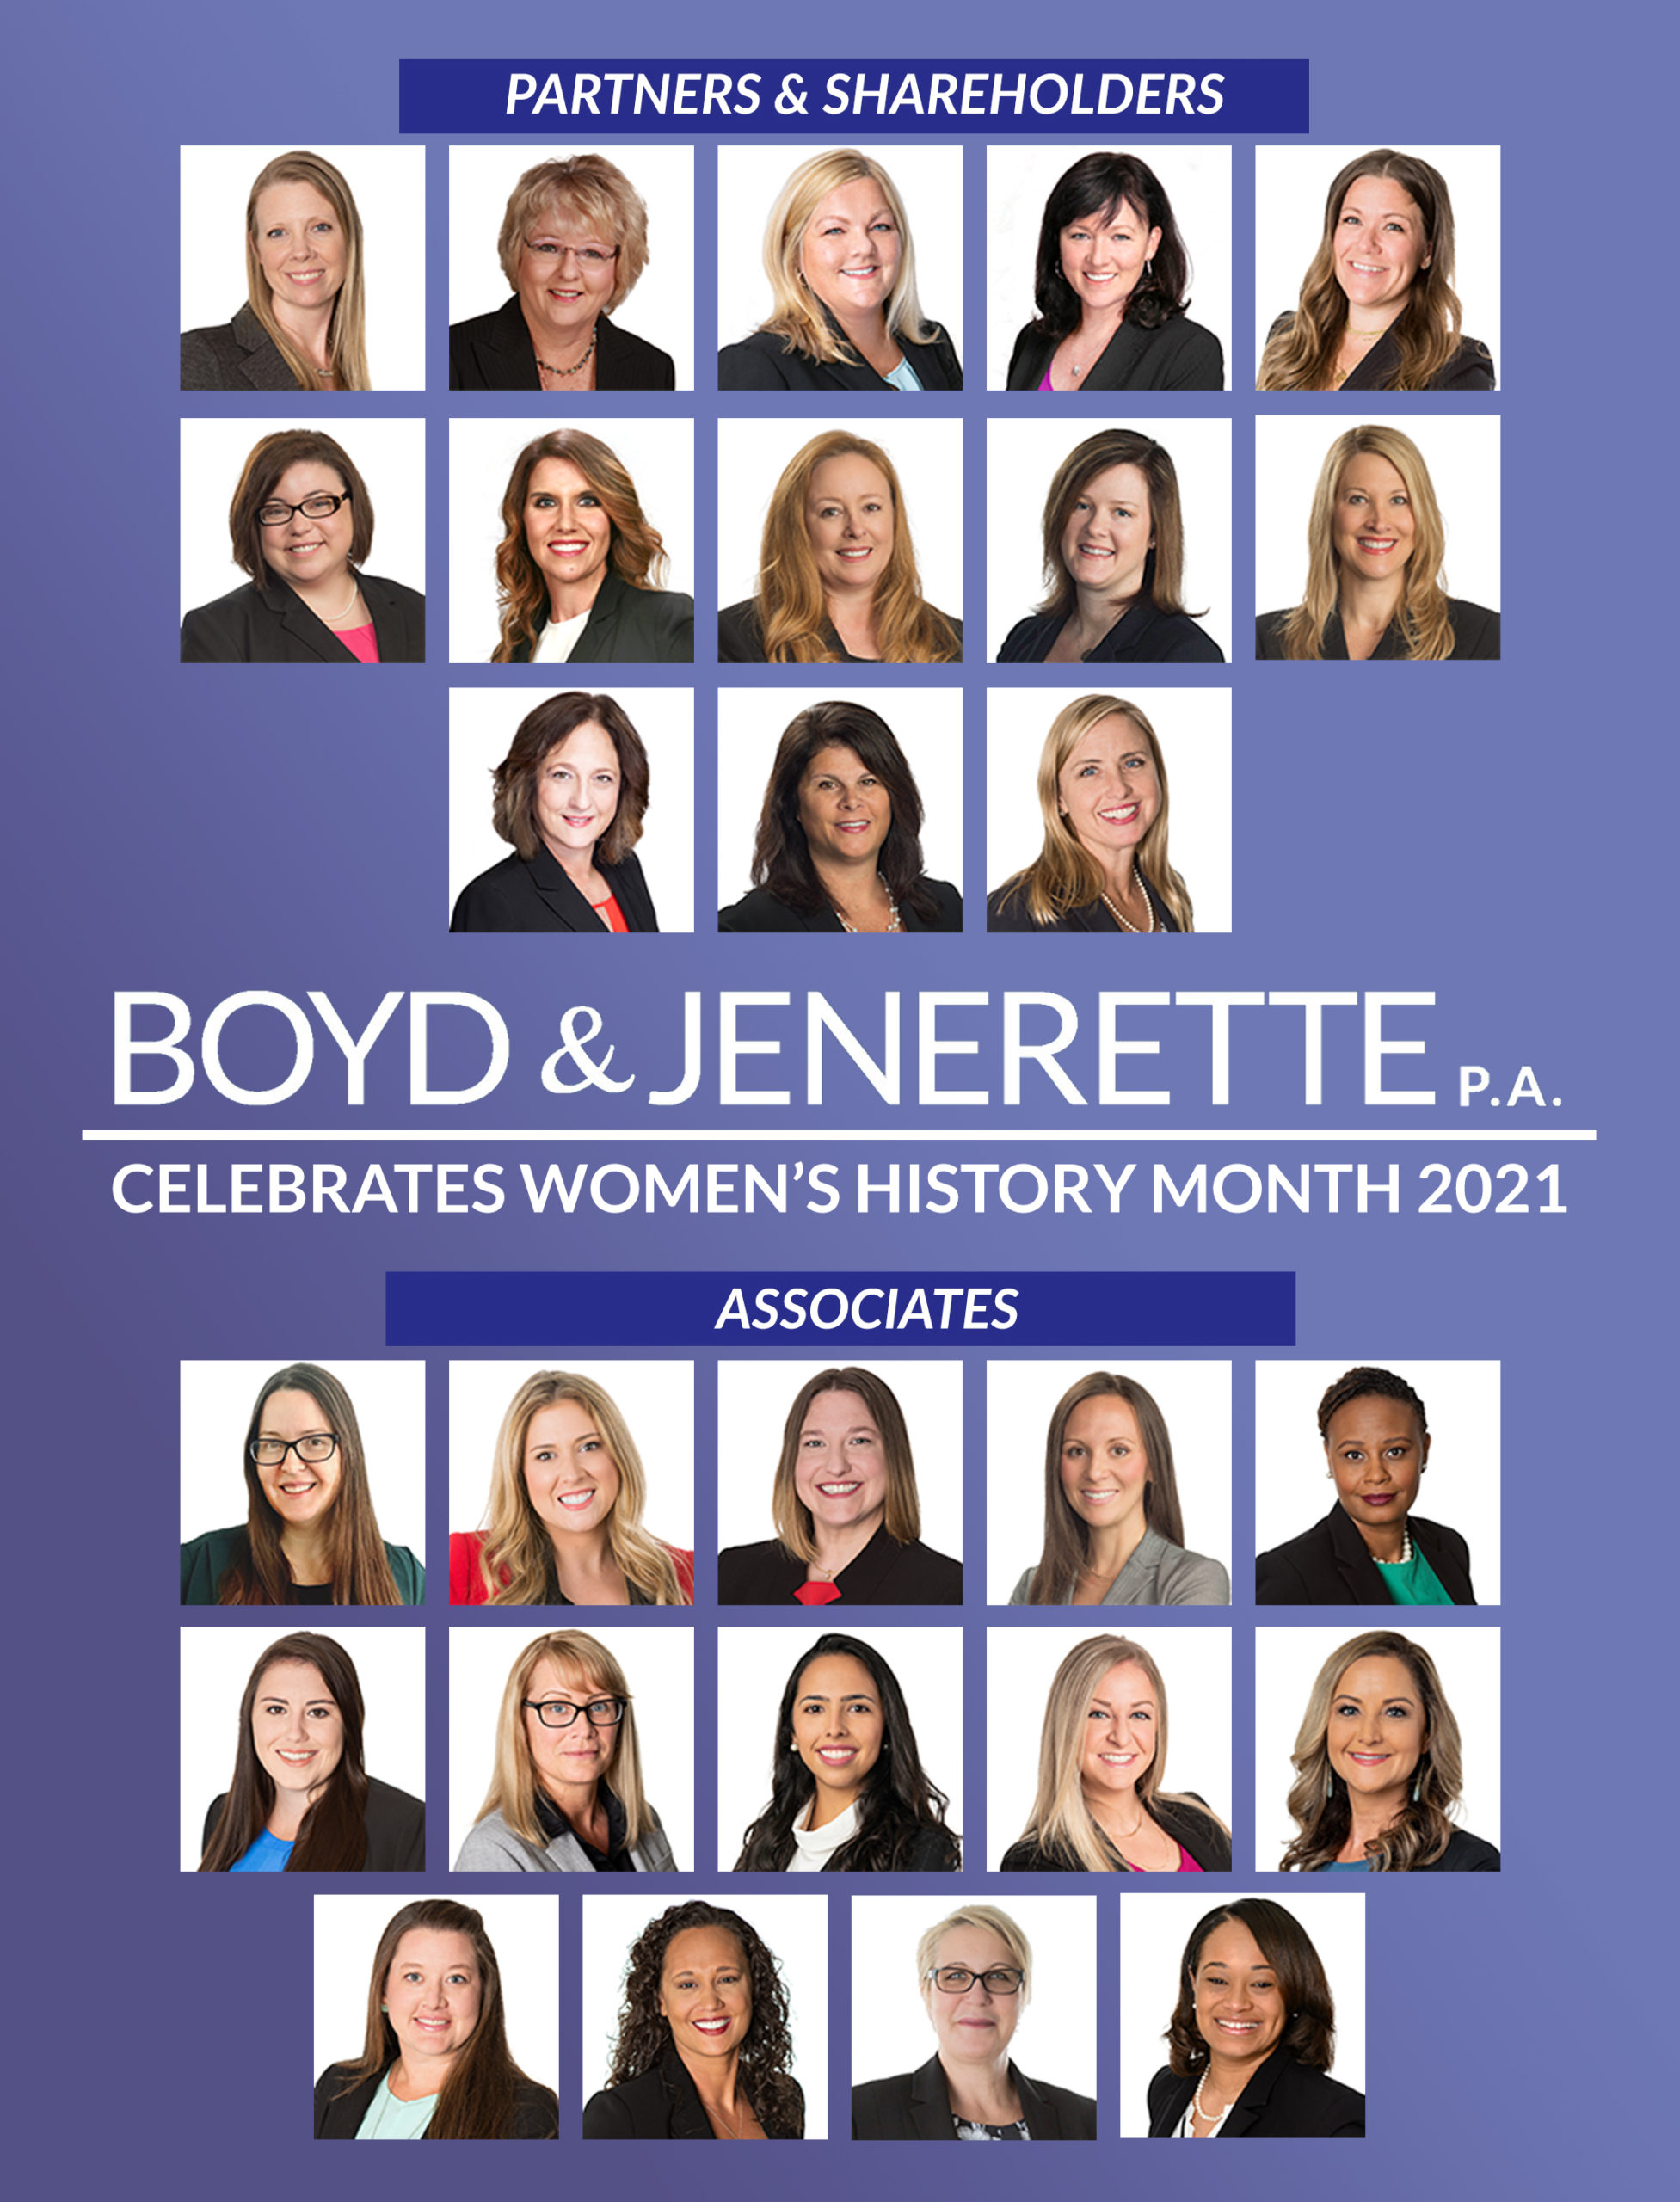 Women's History Month 2021 - Boyd & Jenerette